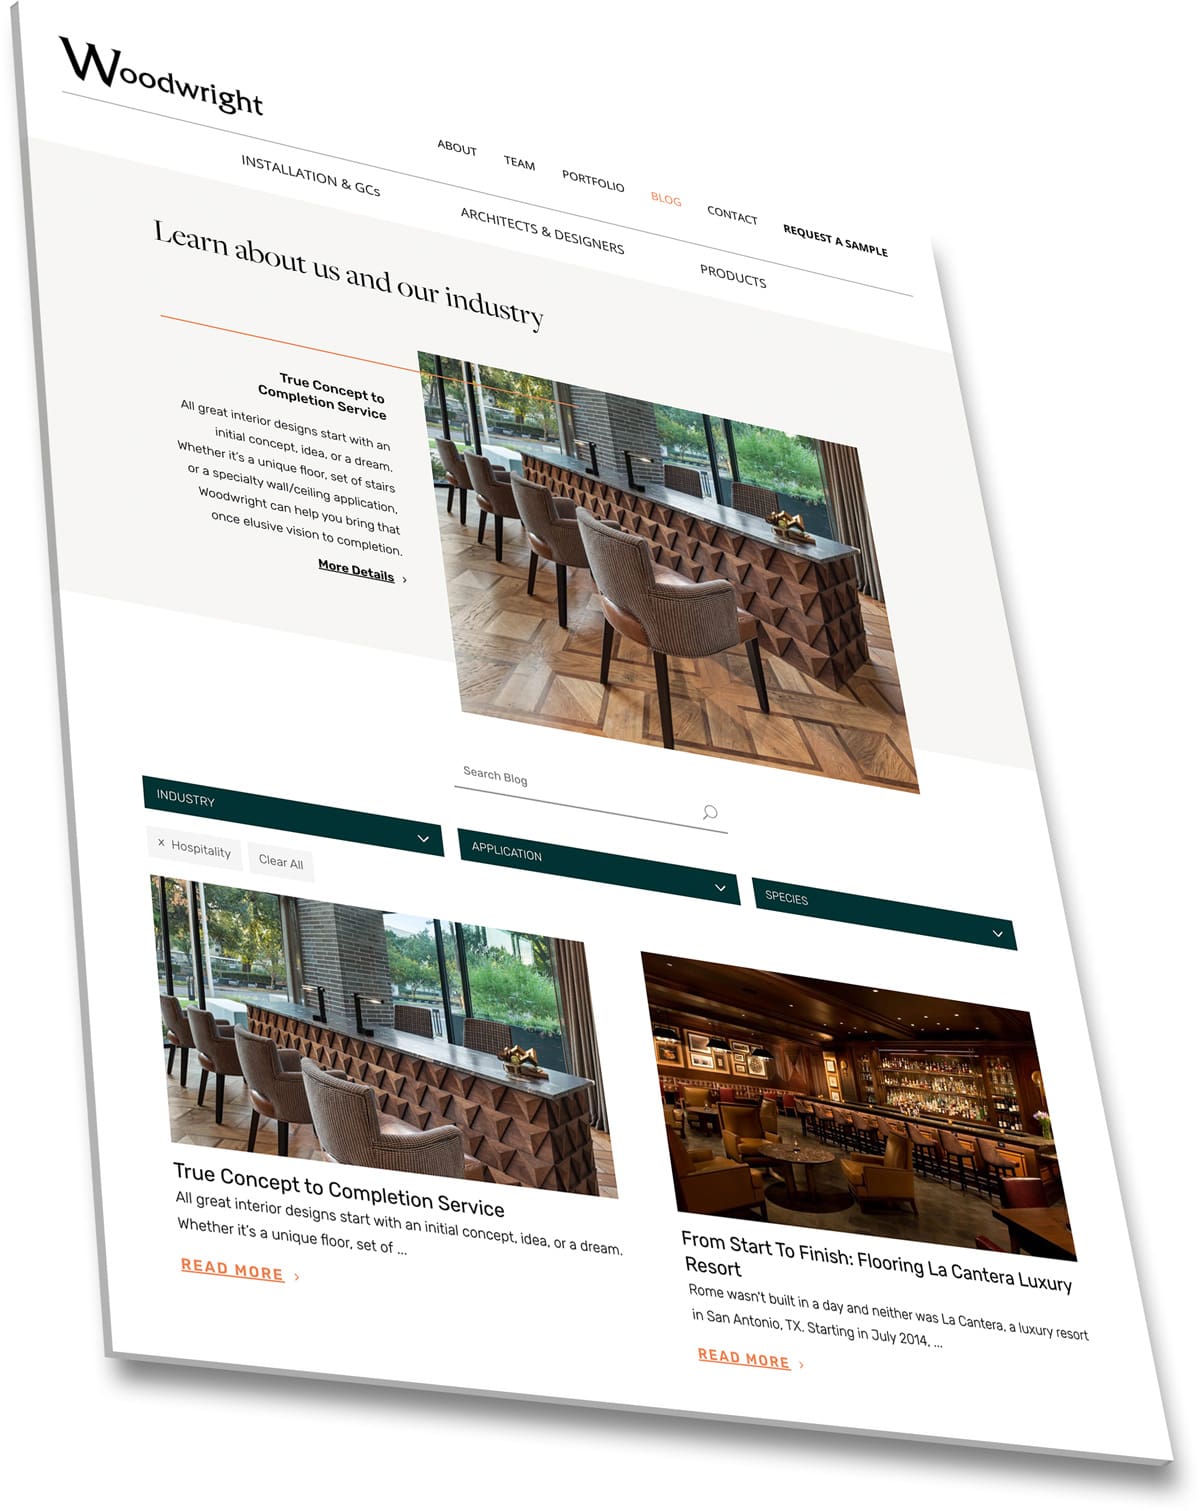 Dallas Wood Flooring Company Website Design | Liquid Media